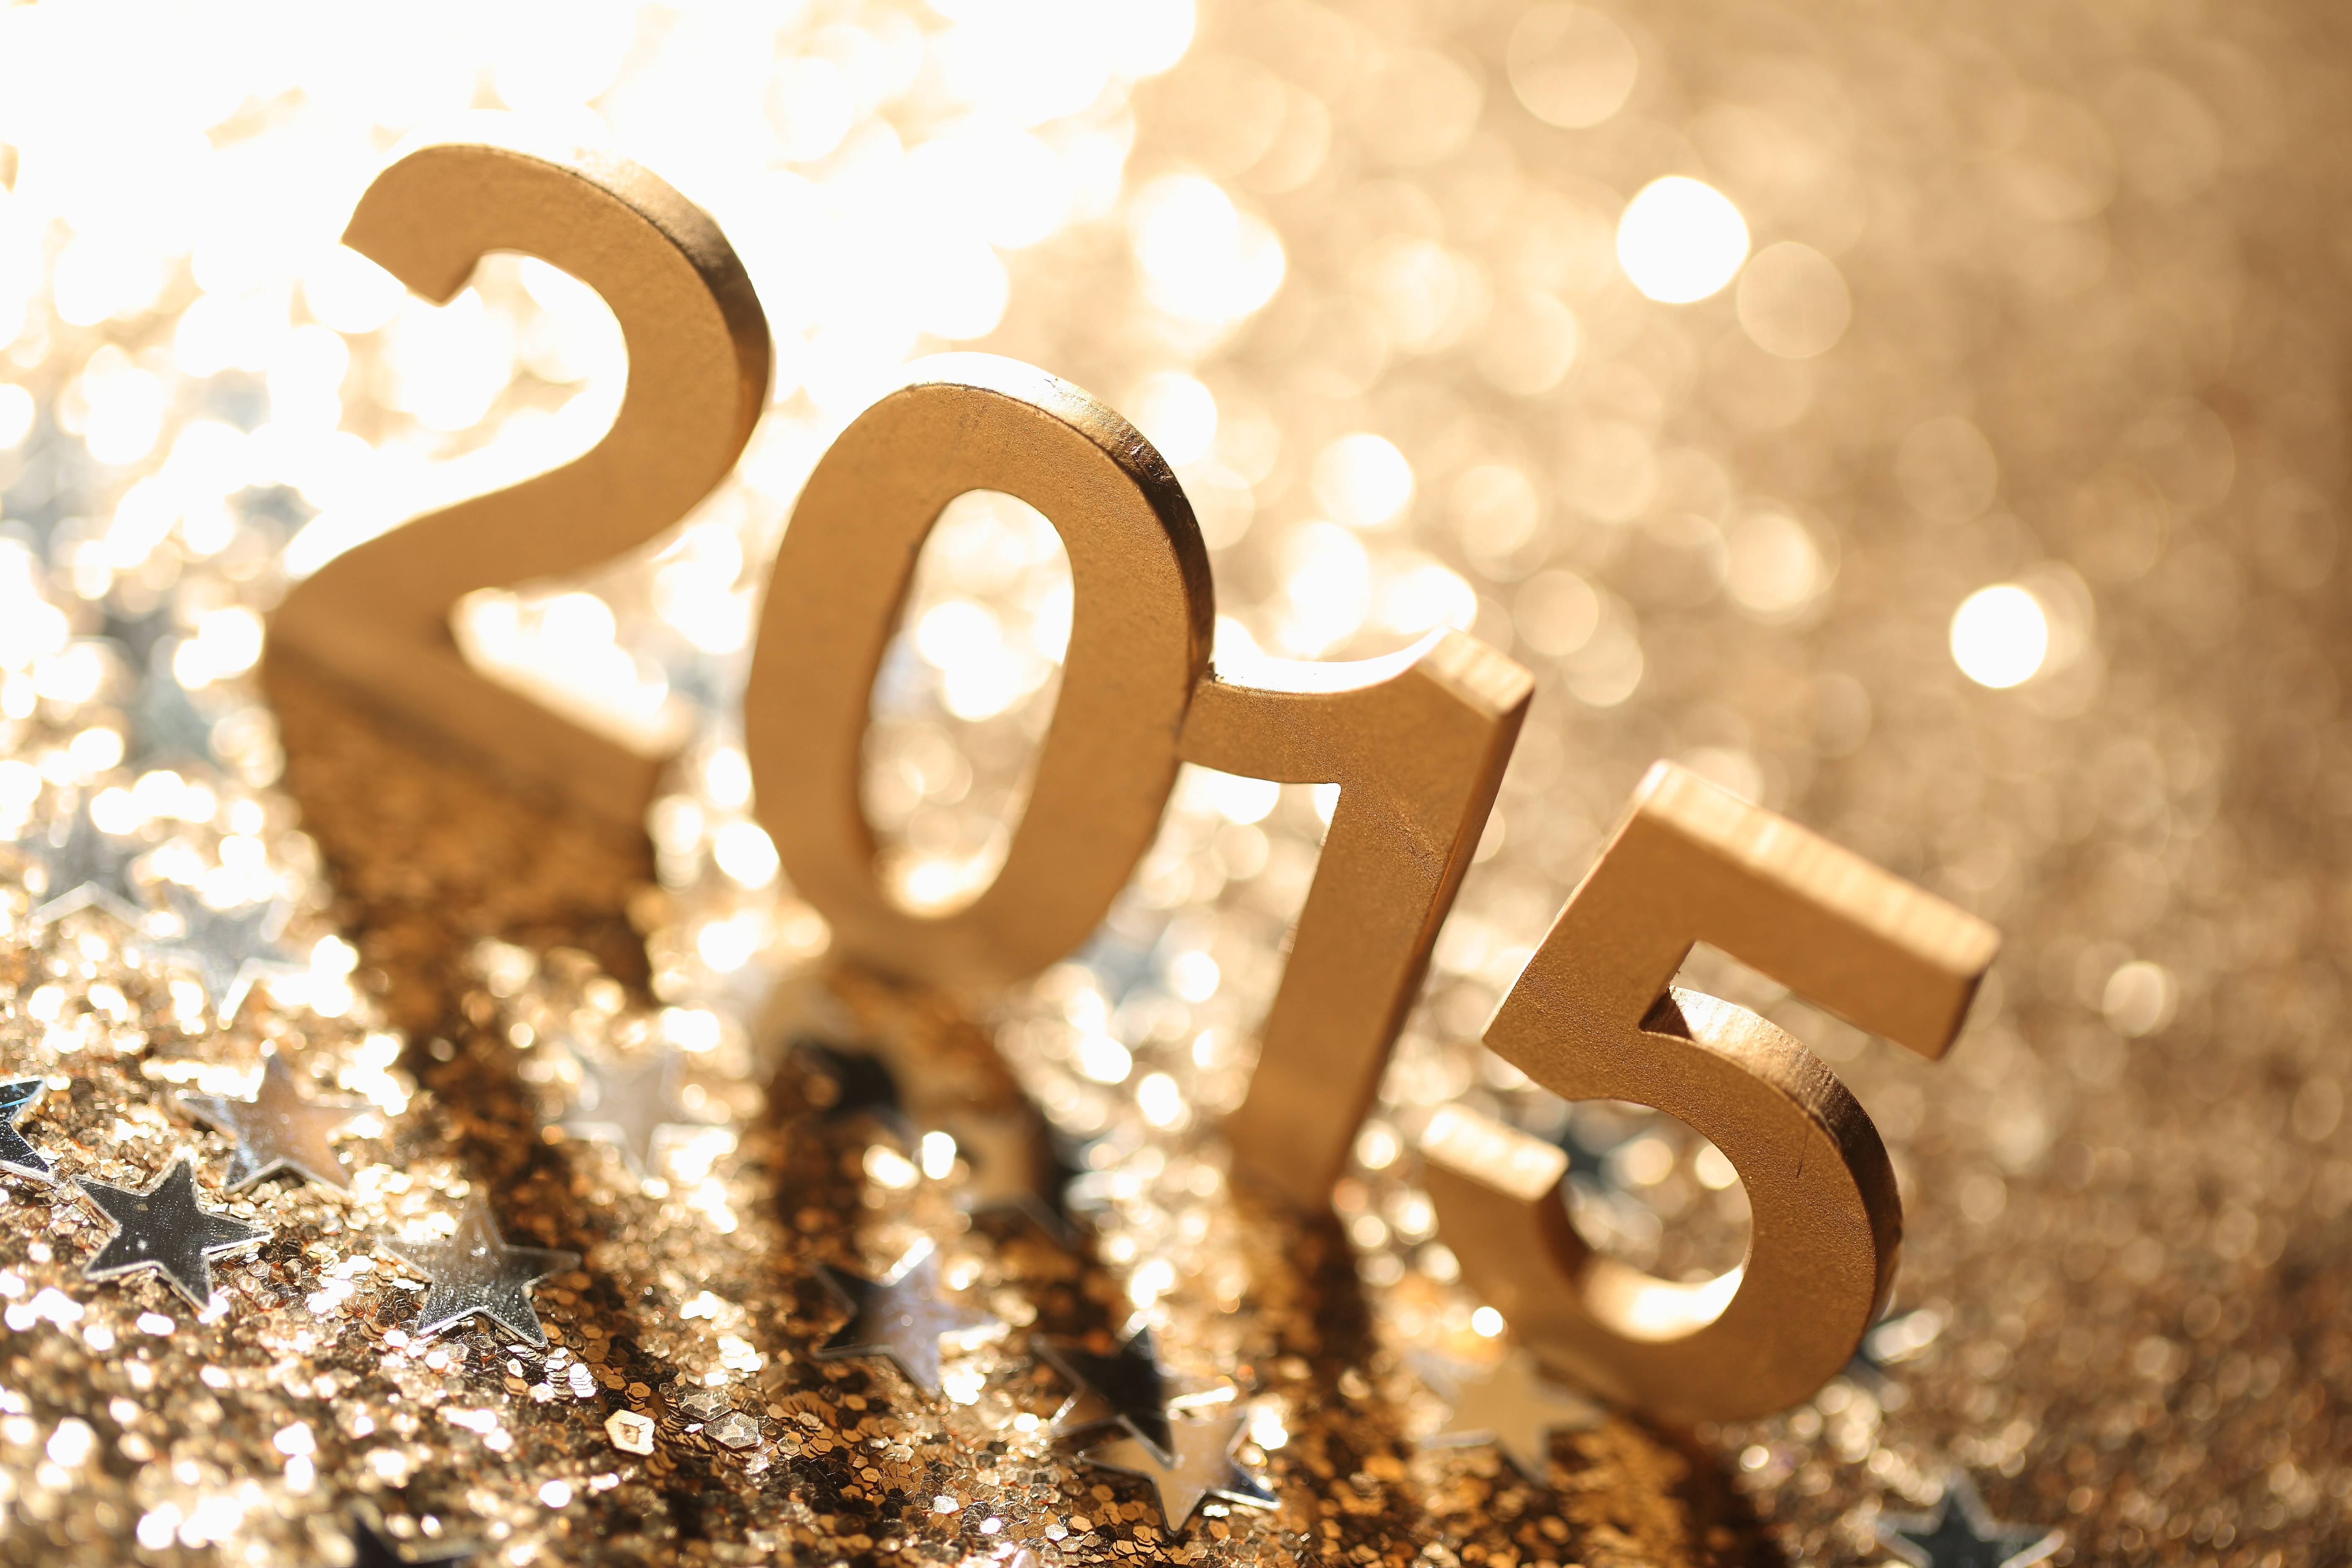 2014 2015 году. 2015 Год. Новый год 2015. Цифры на новый год. 2015 Год картинки.